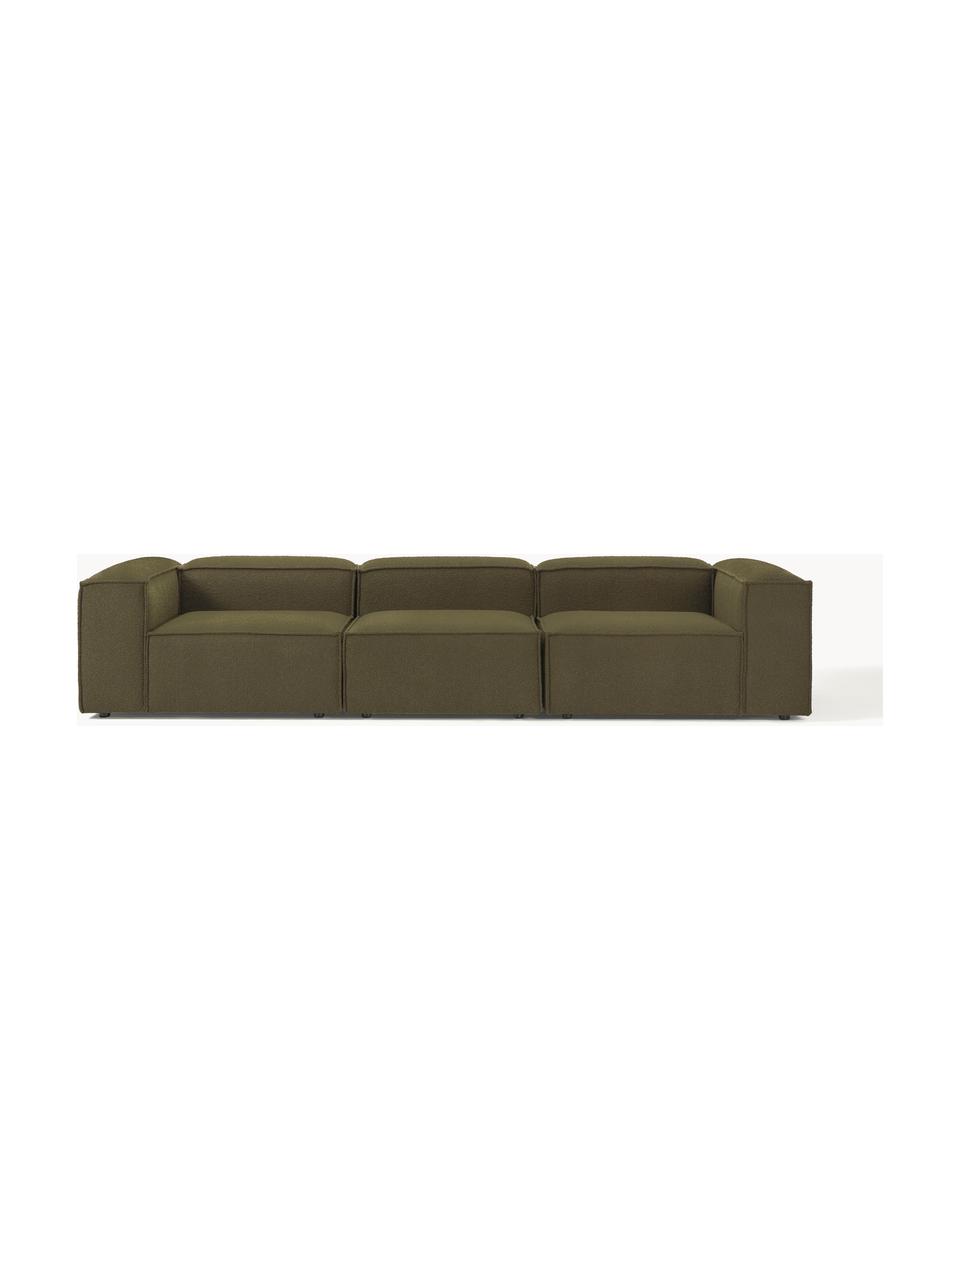 Canapé modulable 4 places en tissu bouclé Lennon, Bouclé vert olive, larg. 327 x prof. 119 cm